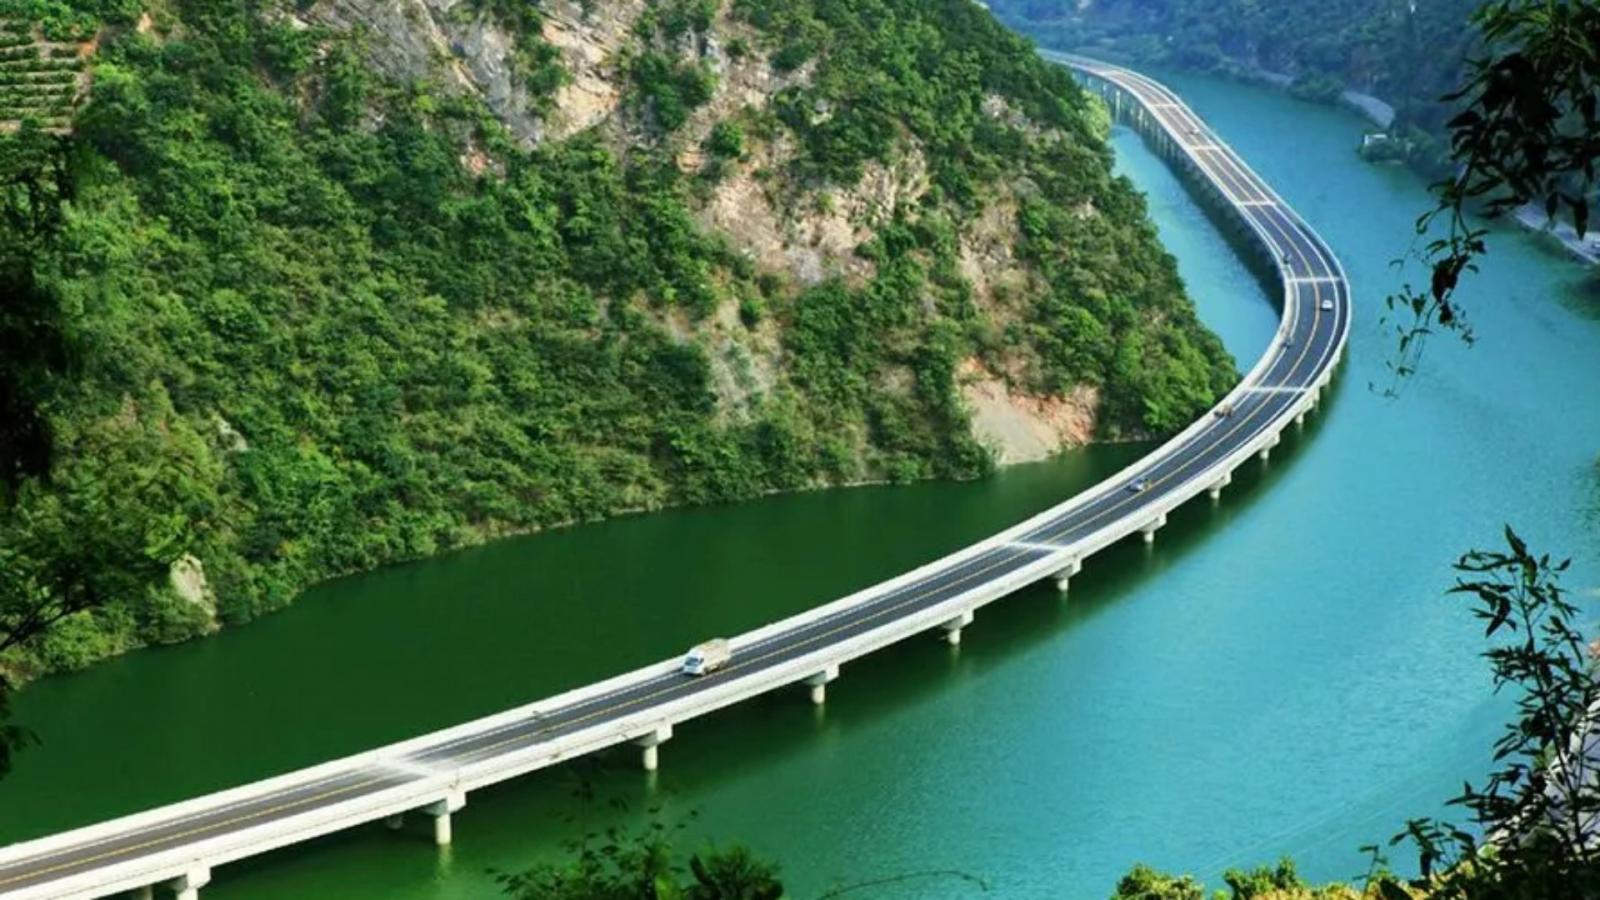 More information about "Over-Water Highway: Ο αυτοκινητόδρομος στην Κίνα που κατασκευάστηκε πάνω από το νερό"